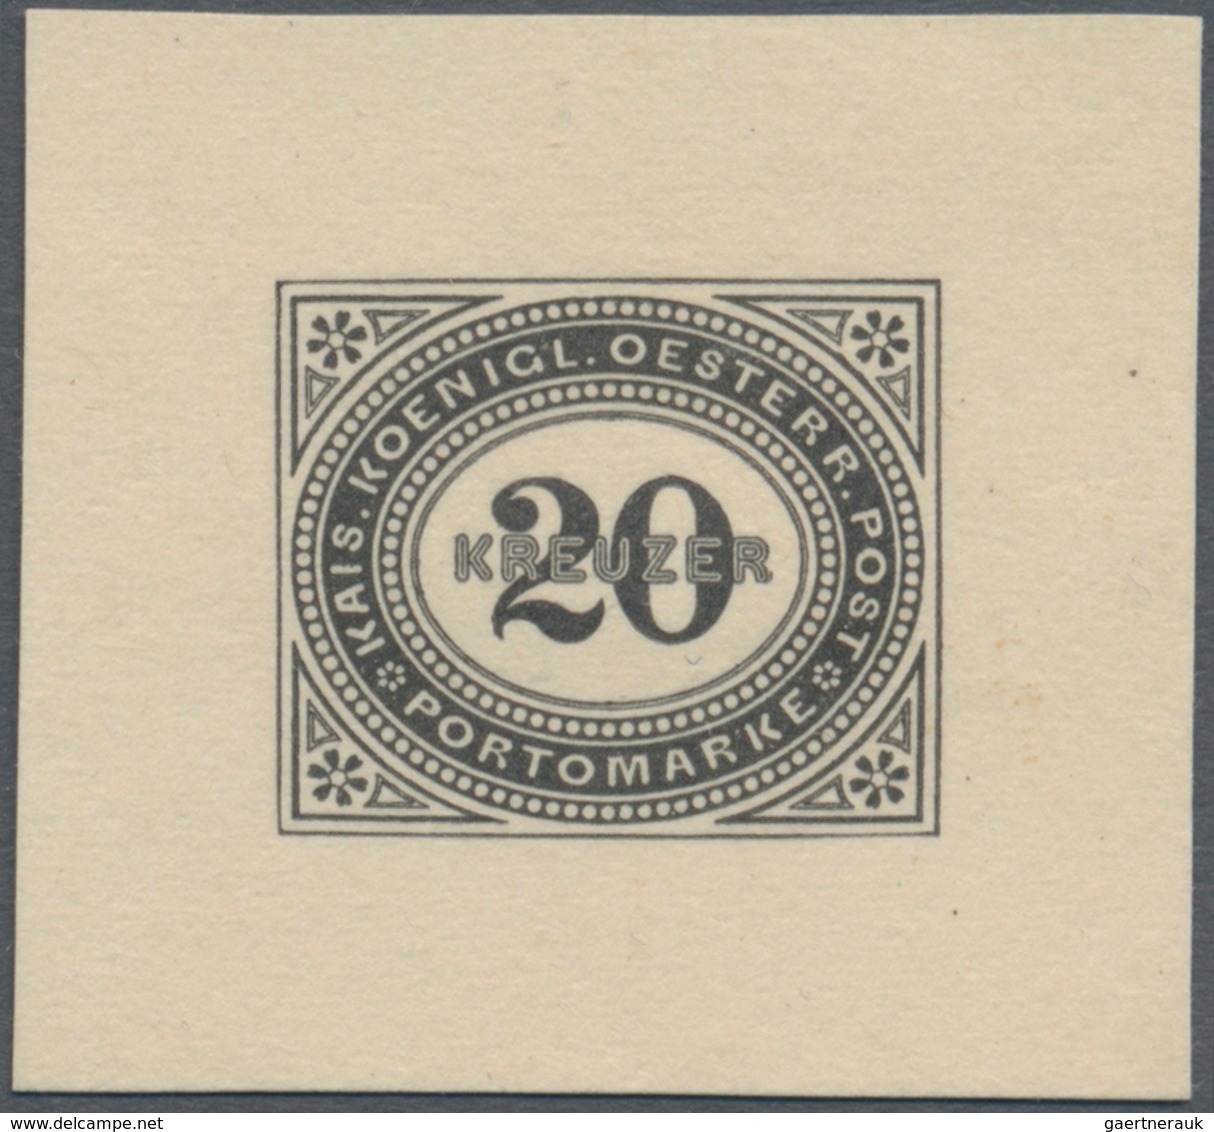 Österreich - Portomarken: 1894/1895, 1 Kr. bis 50 Kr., kompletter Satz von neun Werten je als Einzel